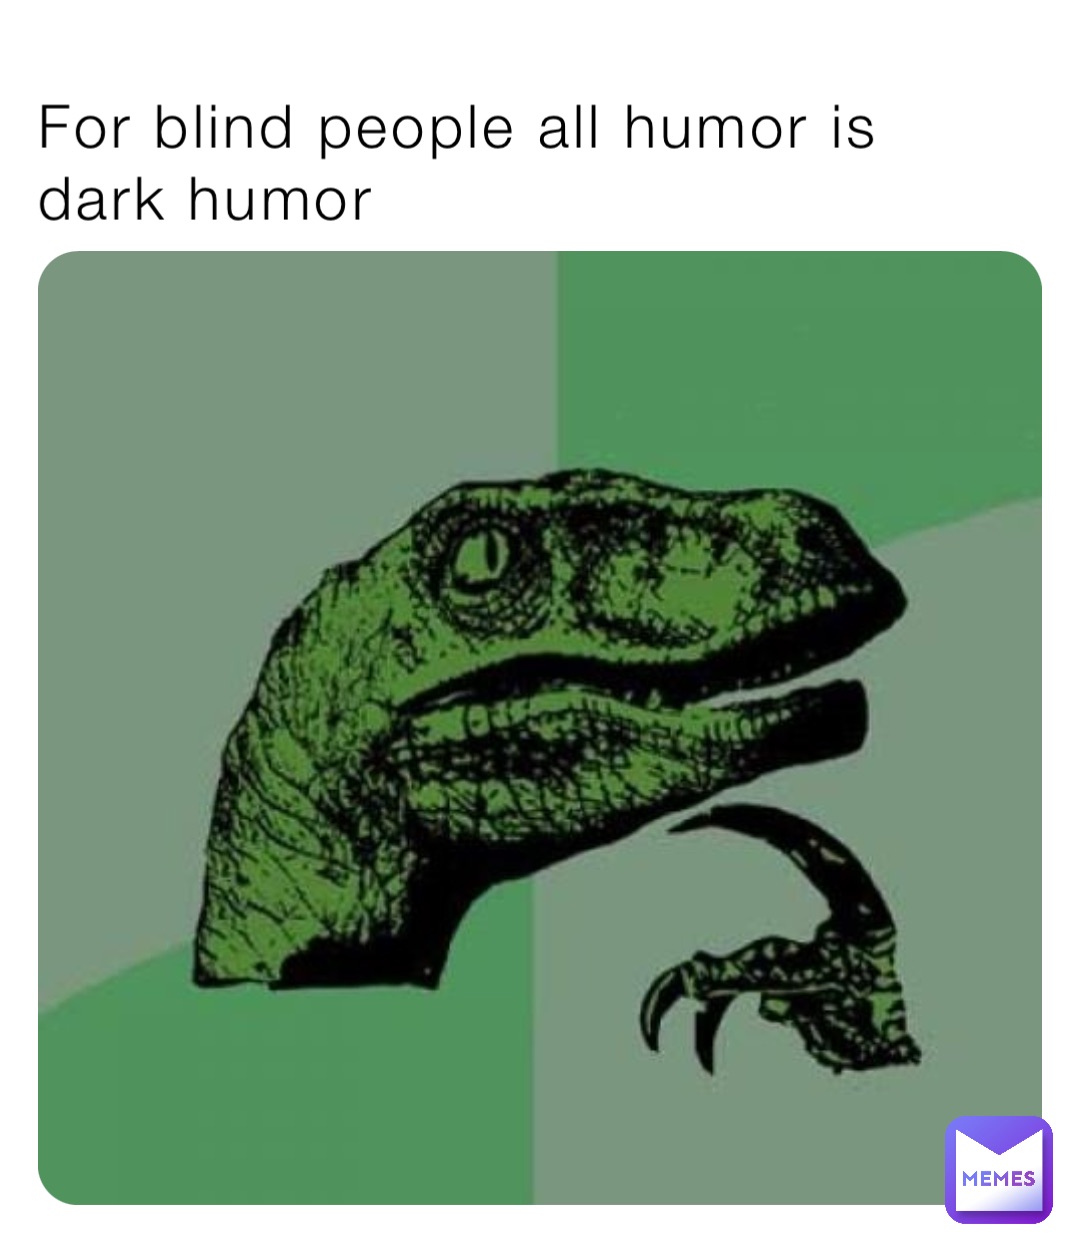 For blind people all humor is dark humor